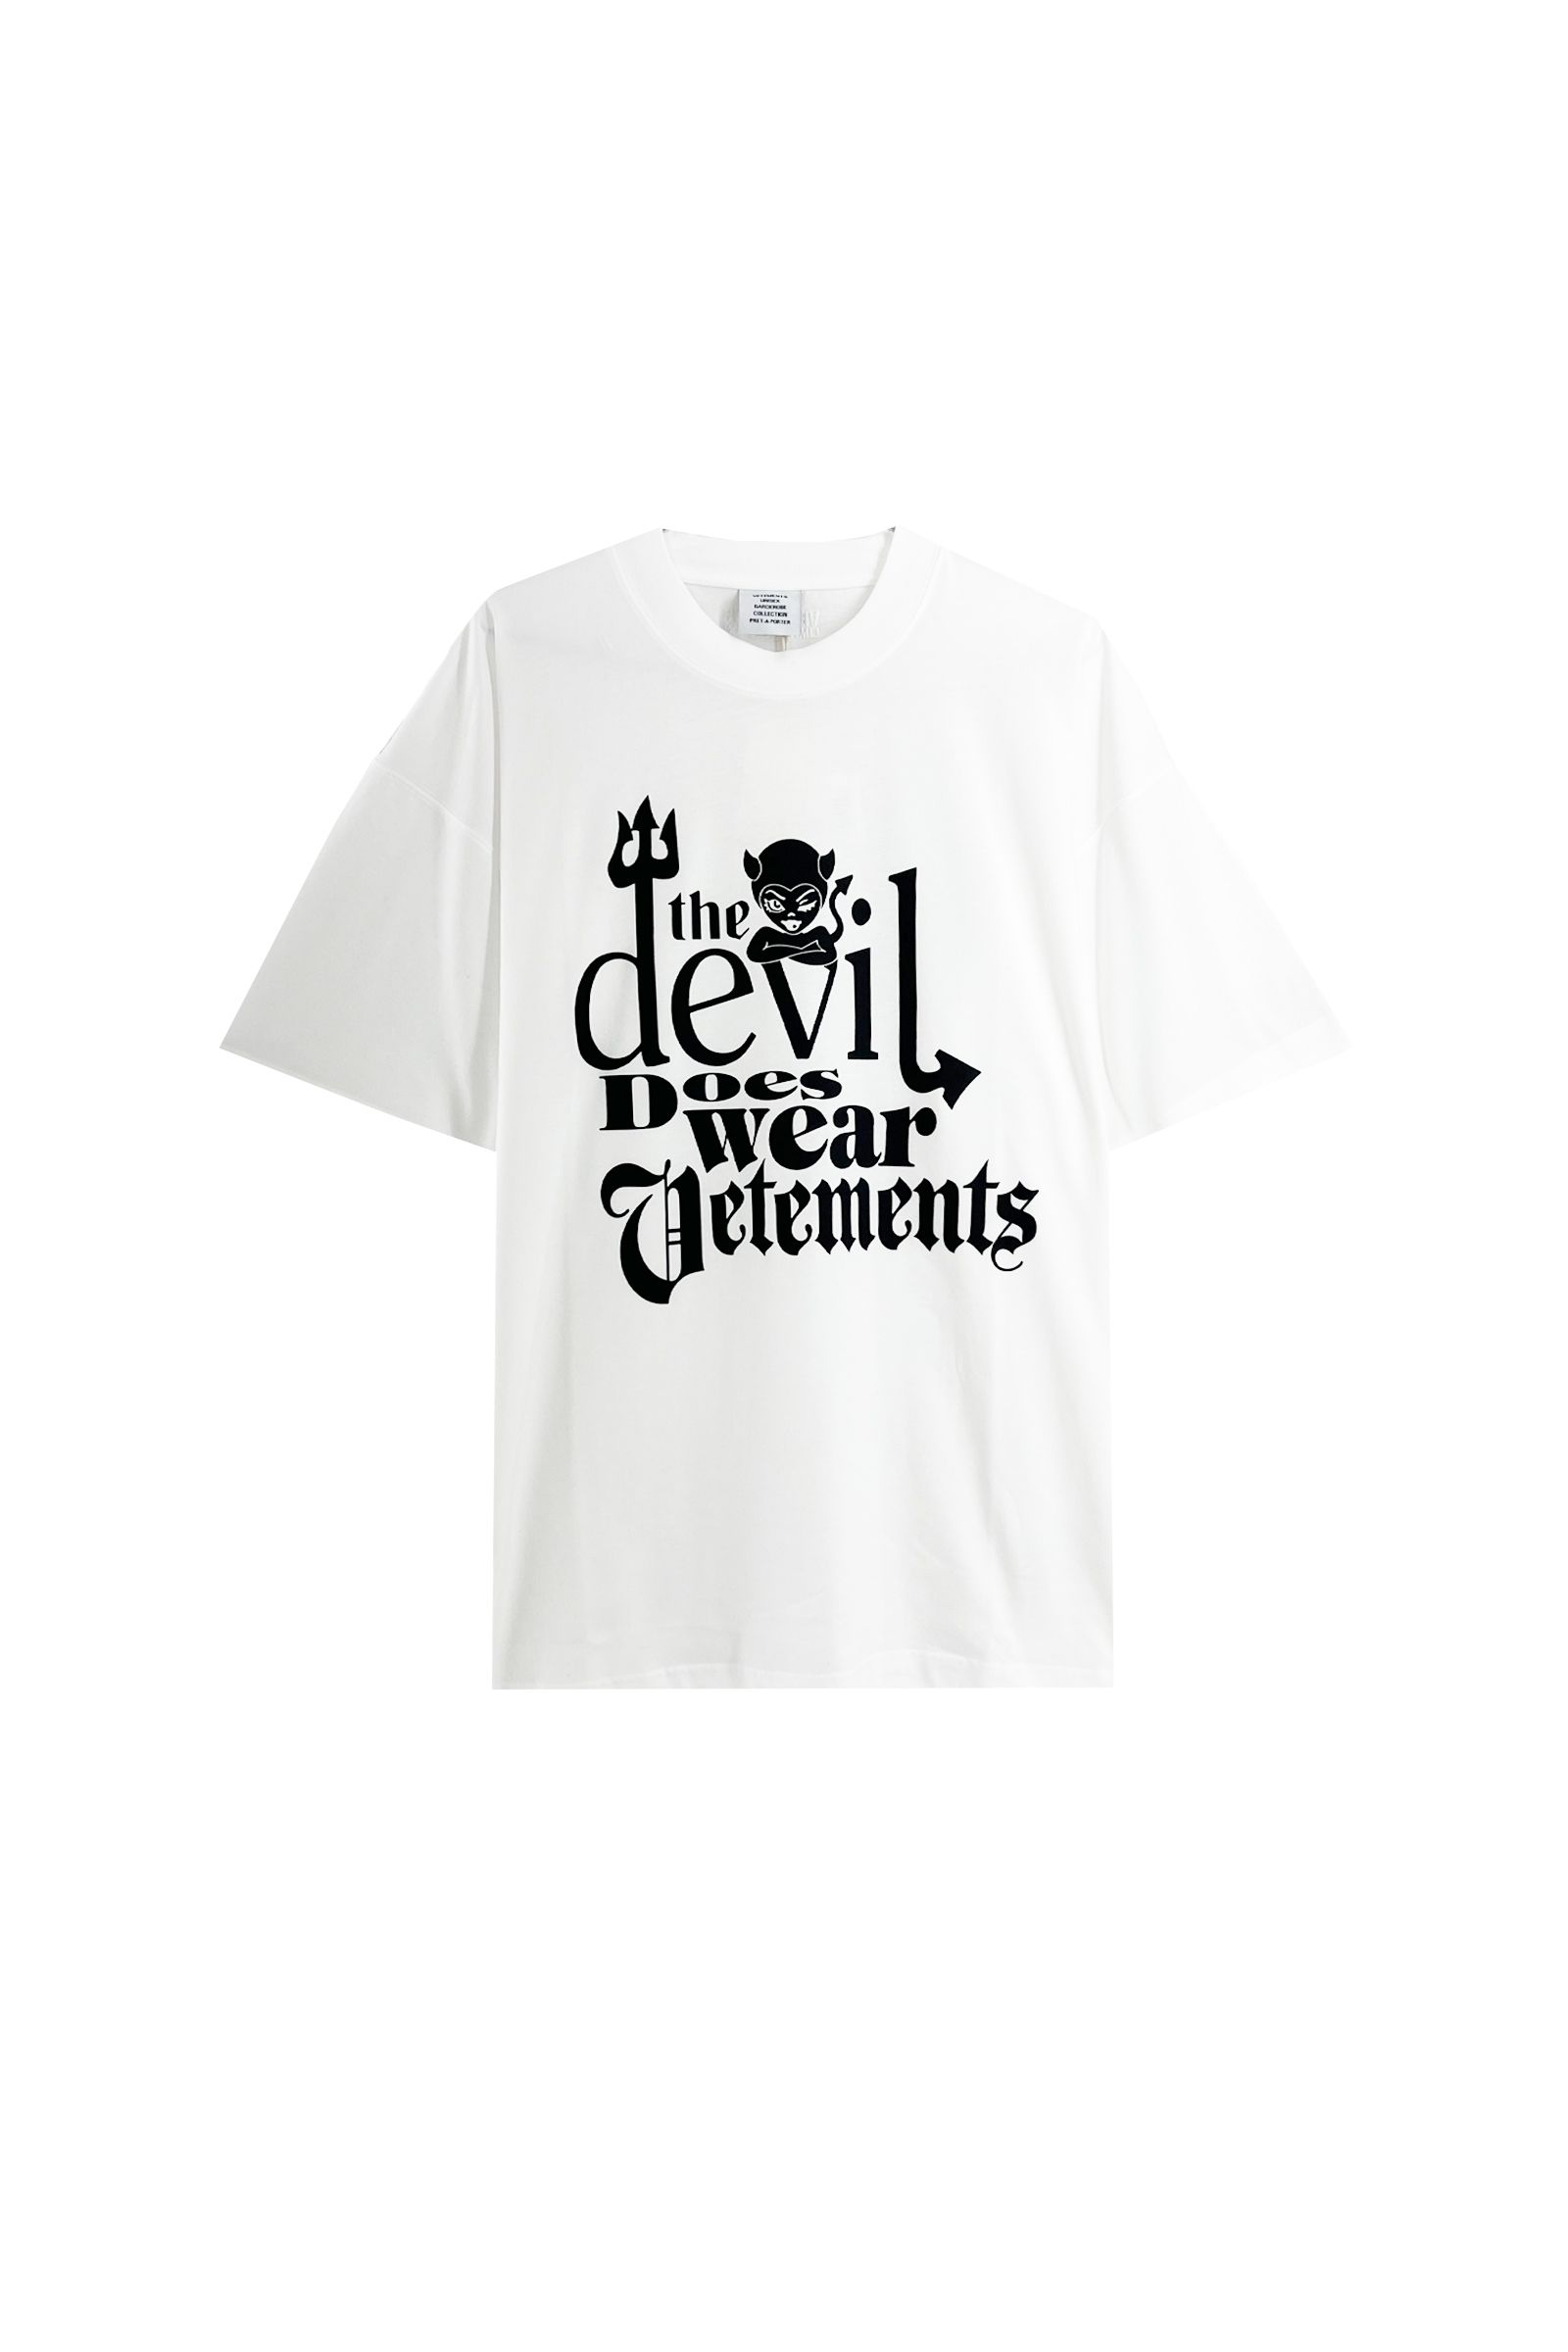 VETEMENTS - Devil does wear vetements T-shirt | Detail